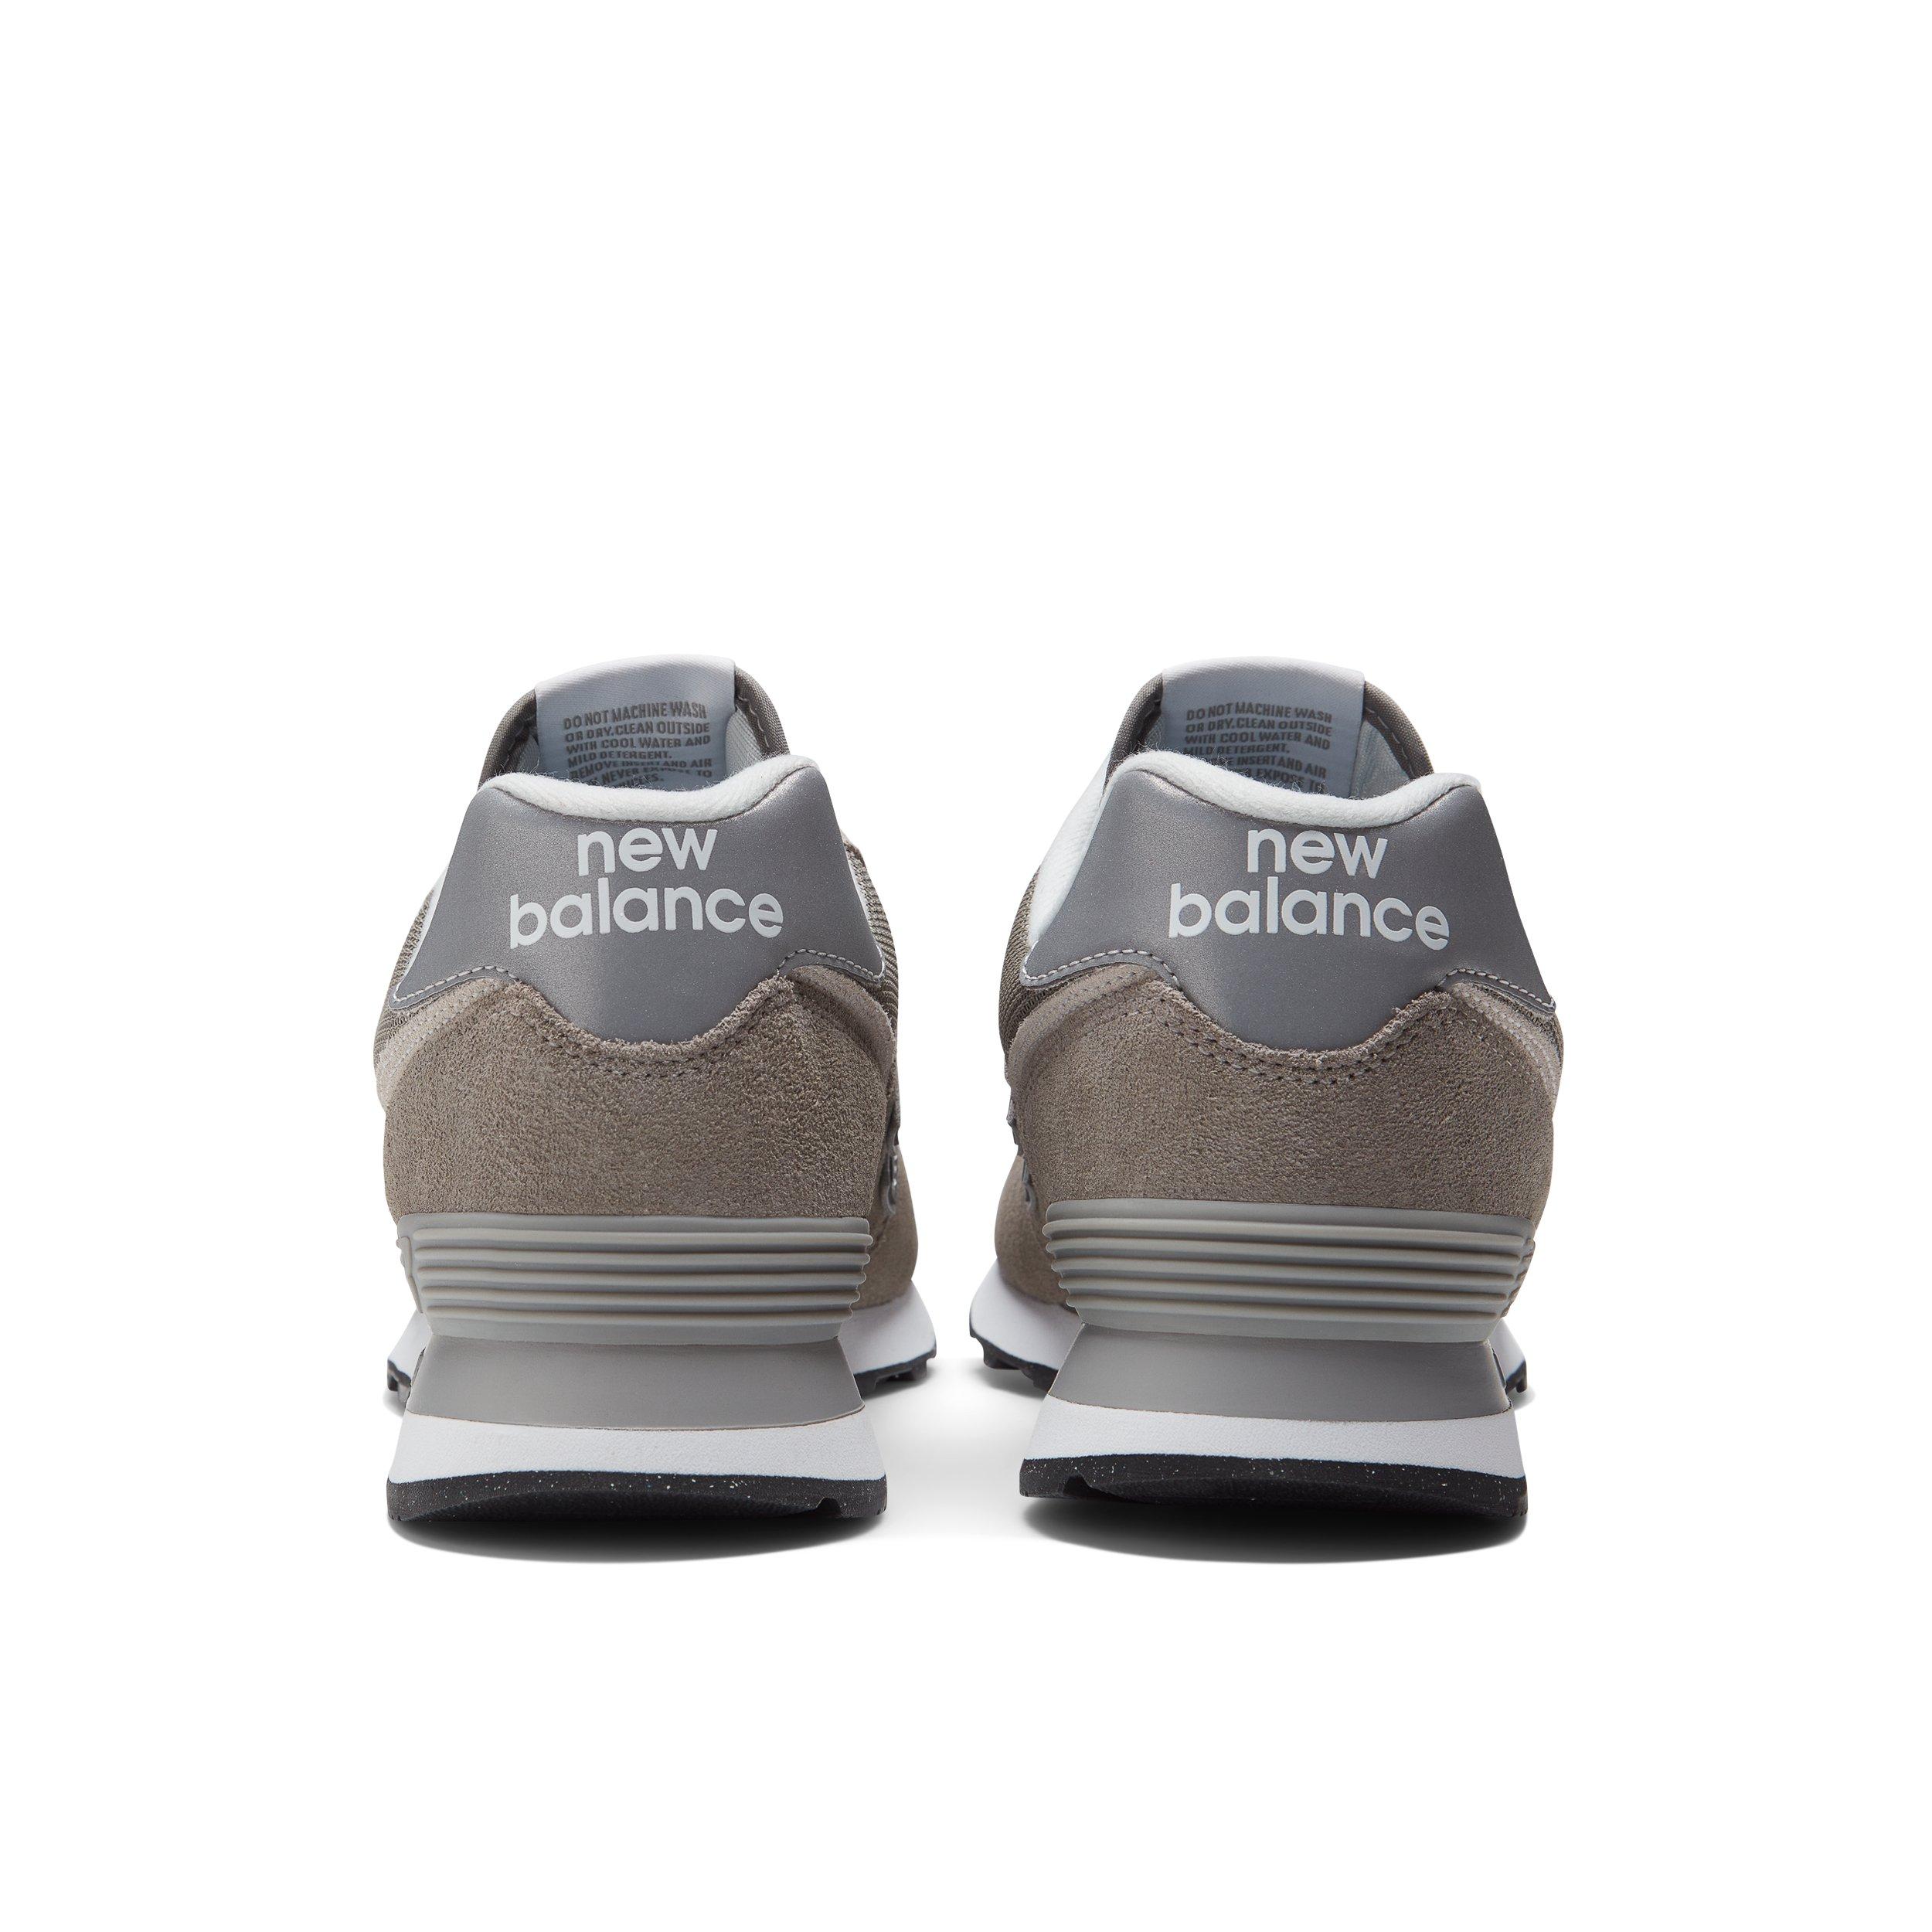 Huisdieren Vernederen Veilig New Balance 574 "Grey" Men's Shoe